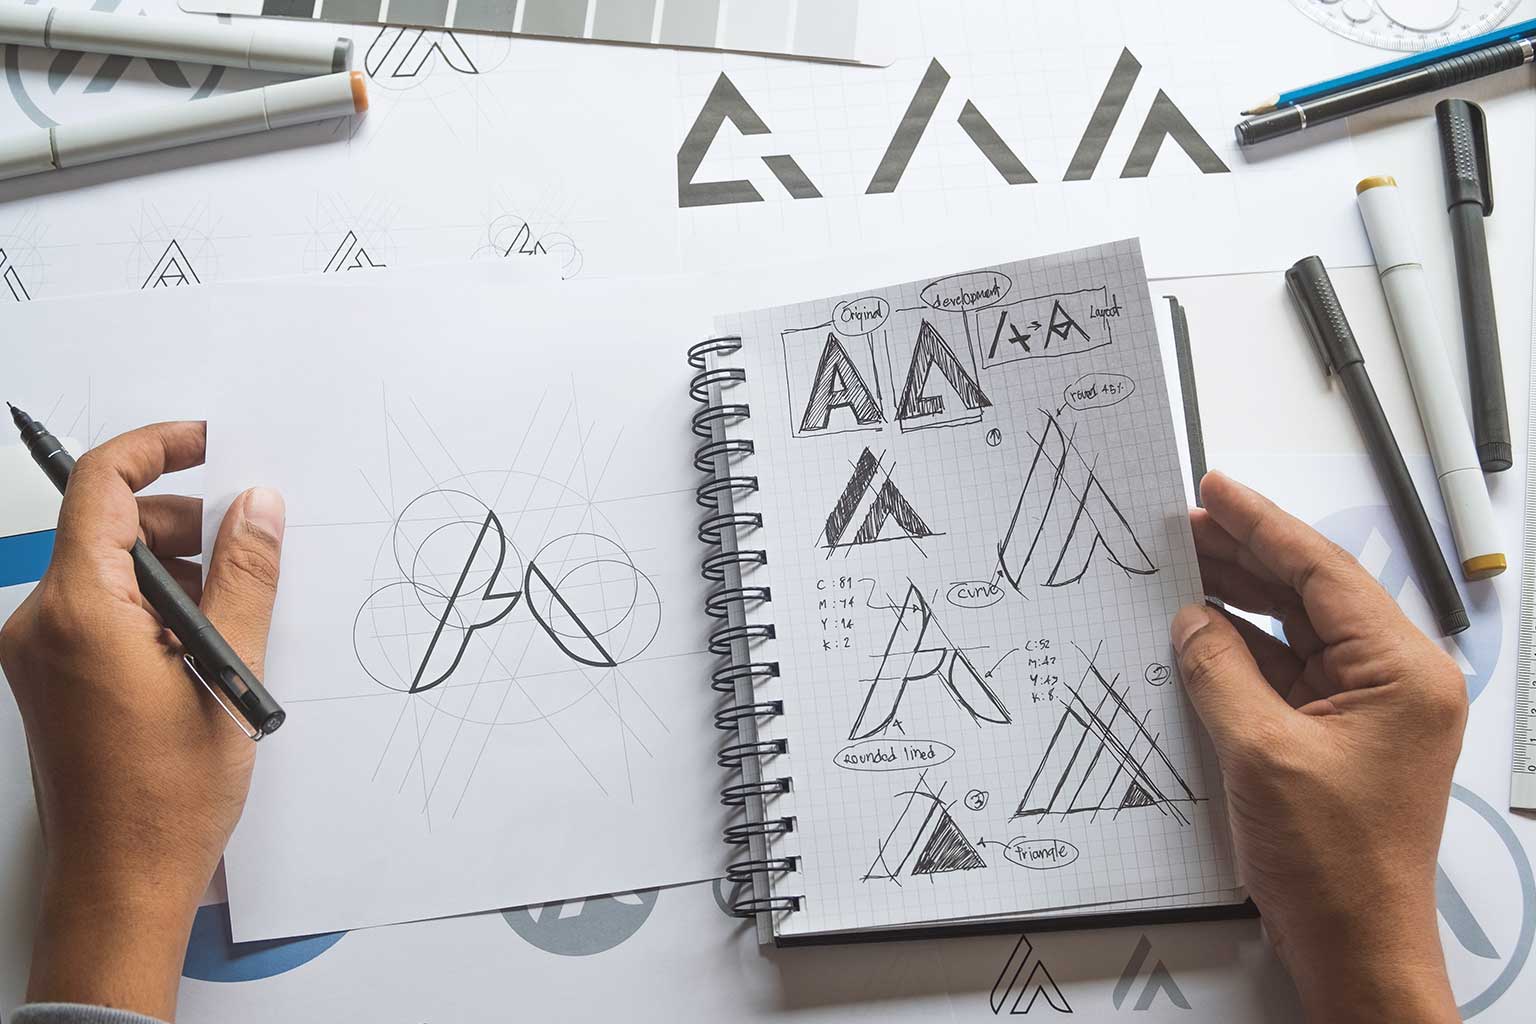 The secret of good logo design – Simplicity!